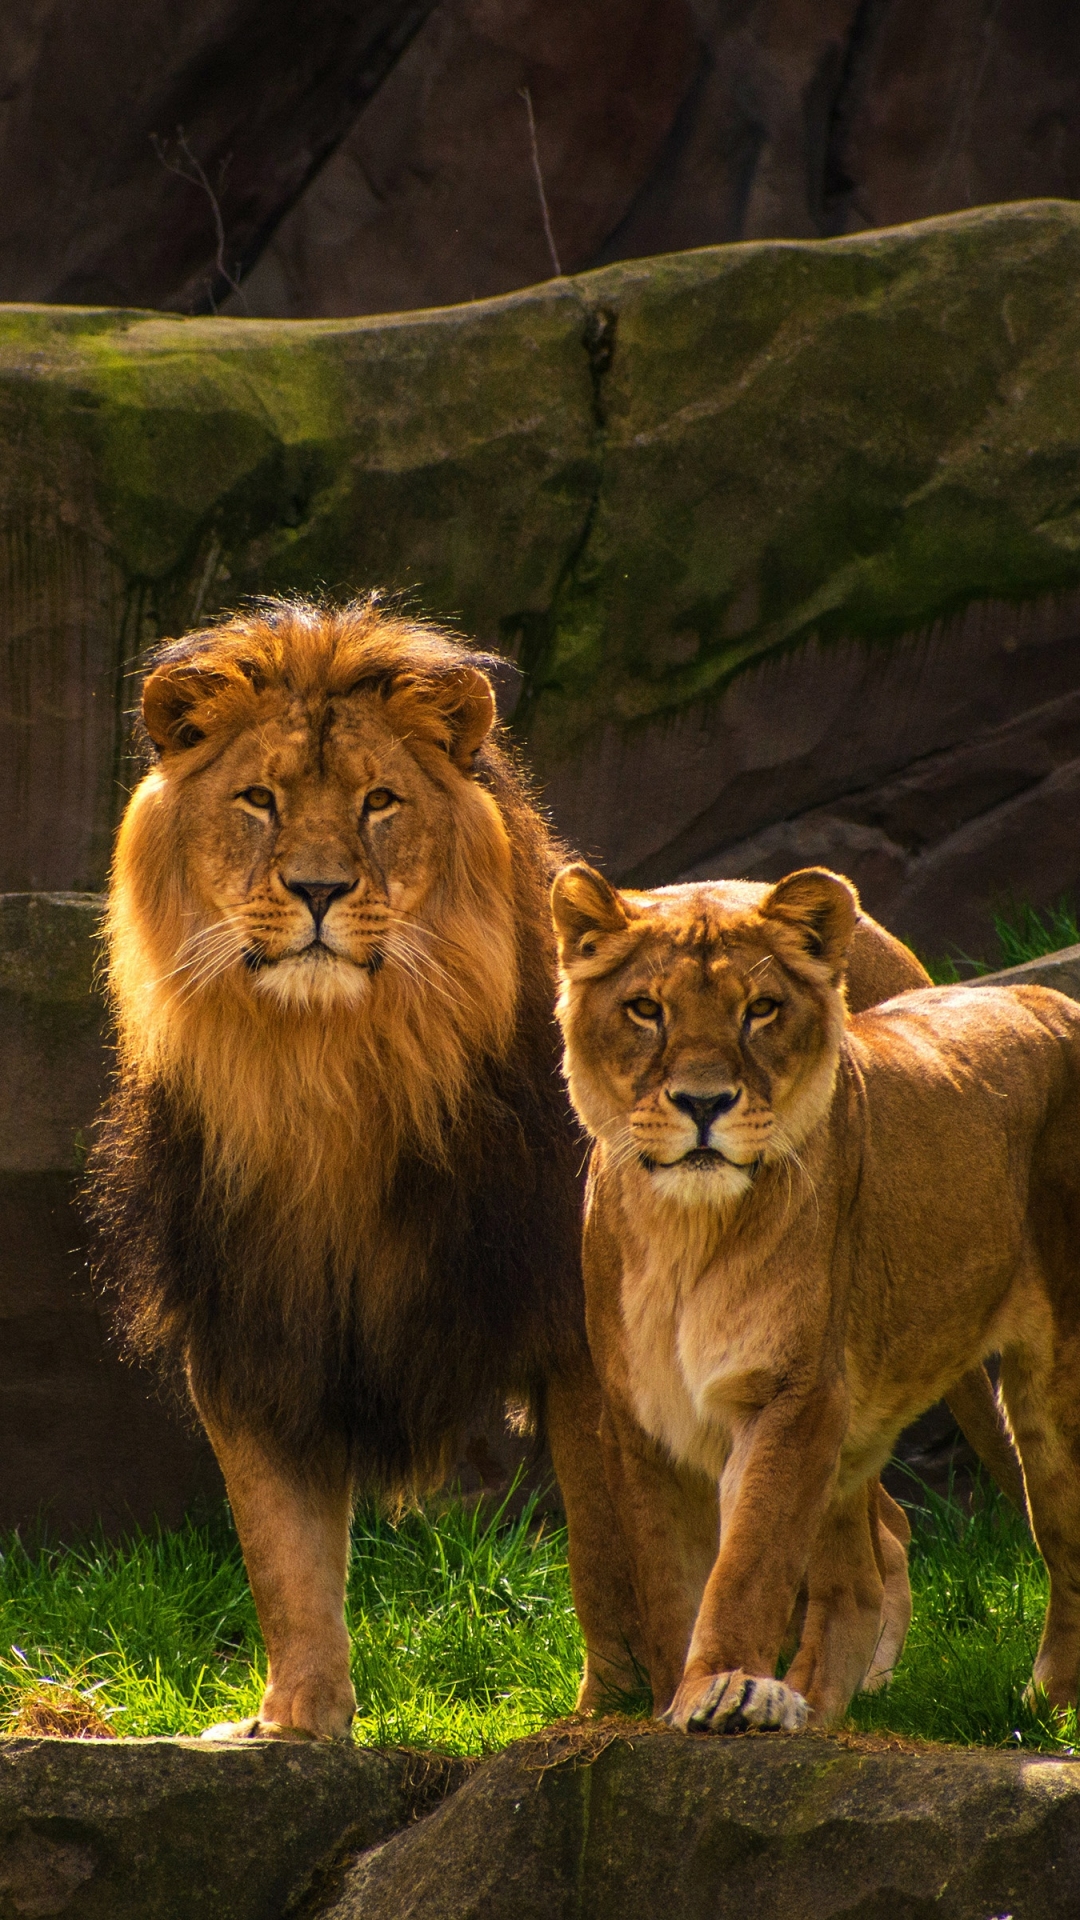 Lion Lioness - 1080x1920 Wallpaper 